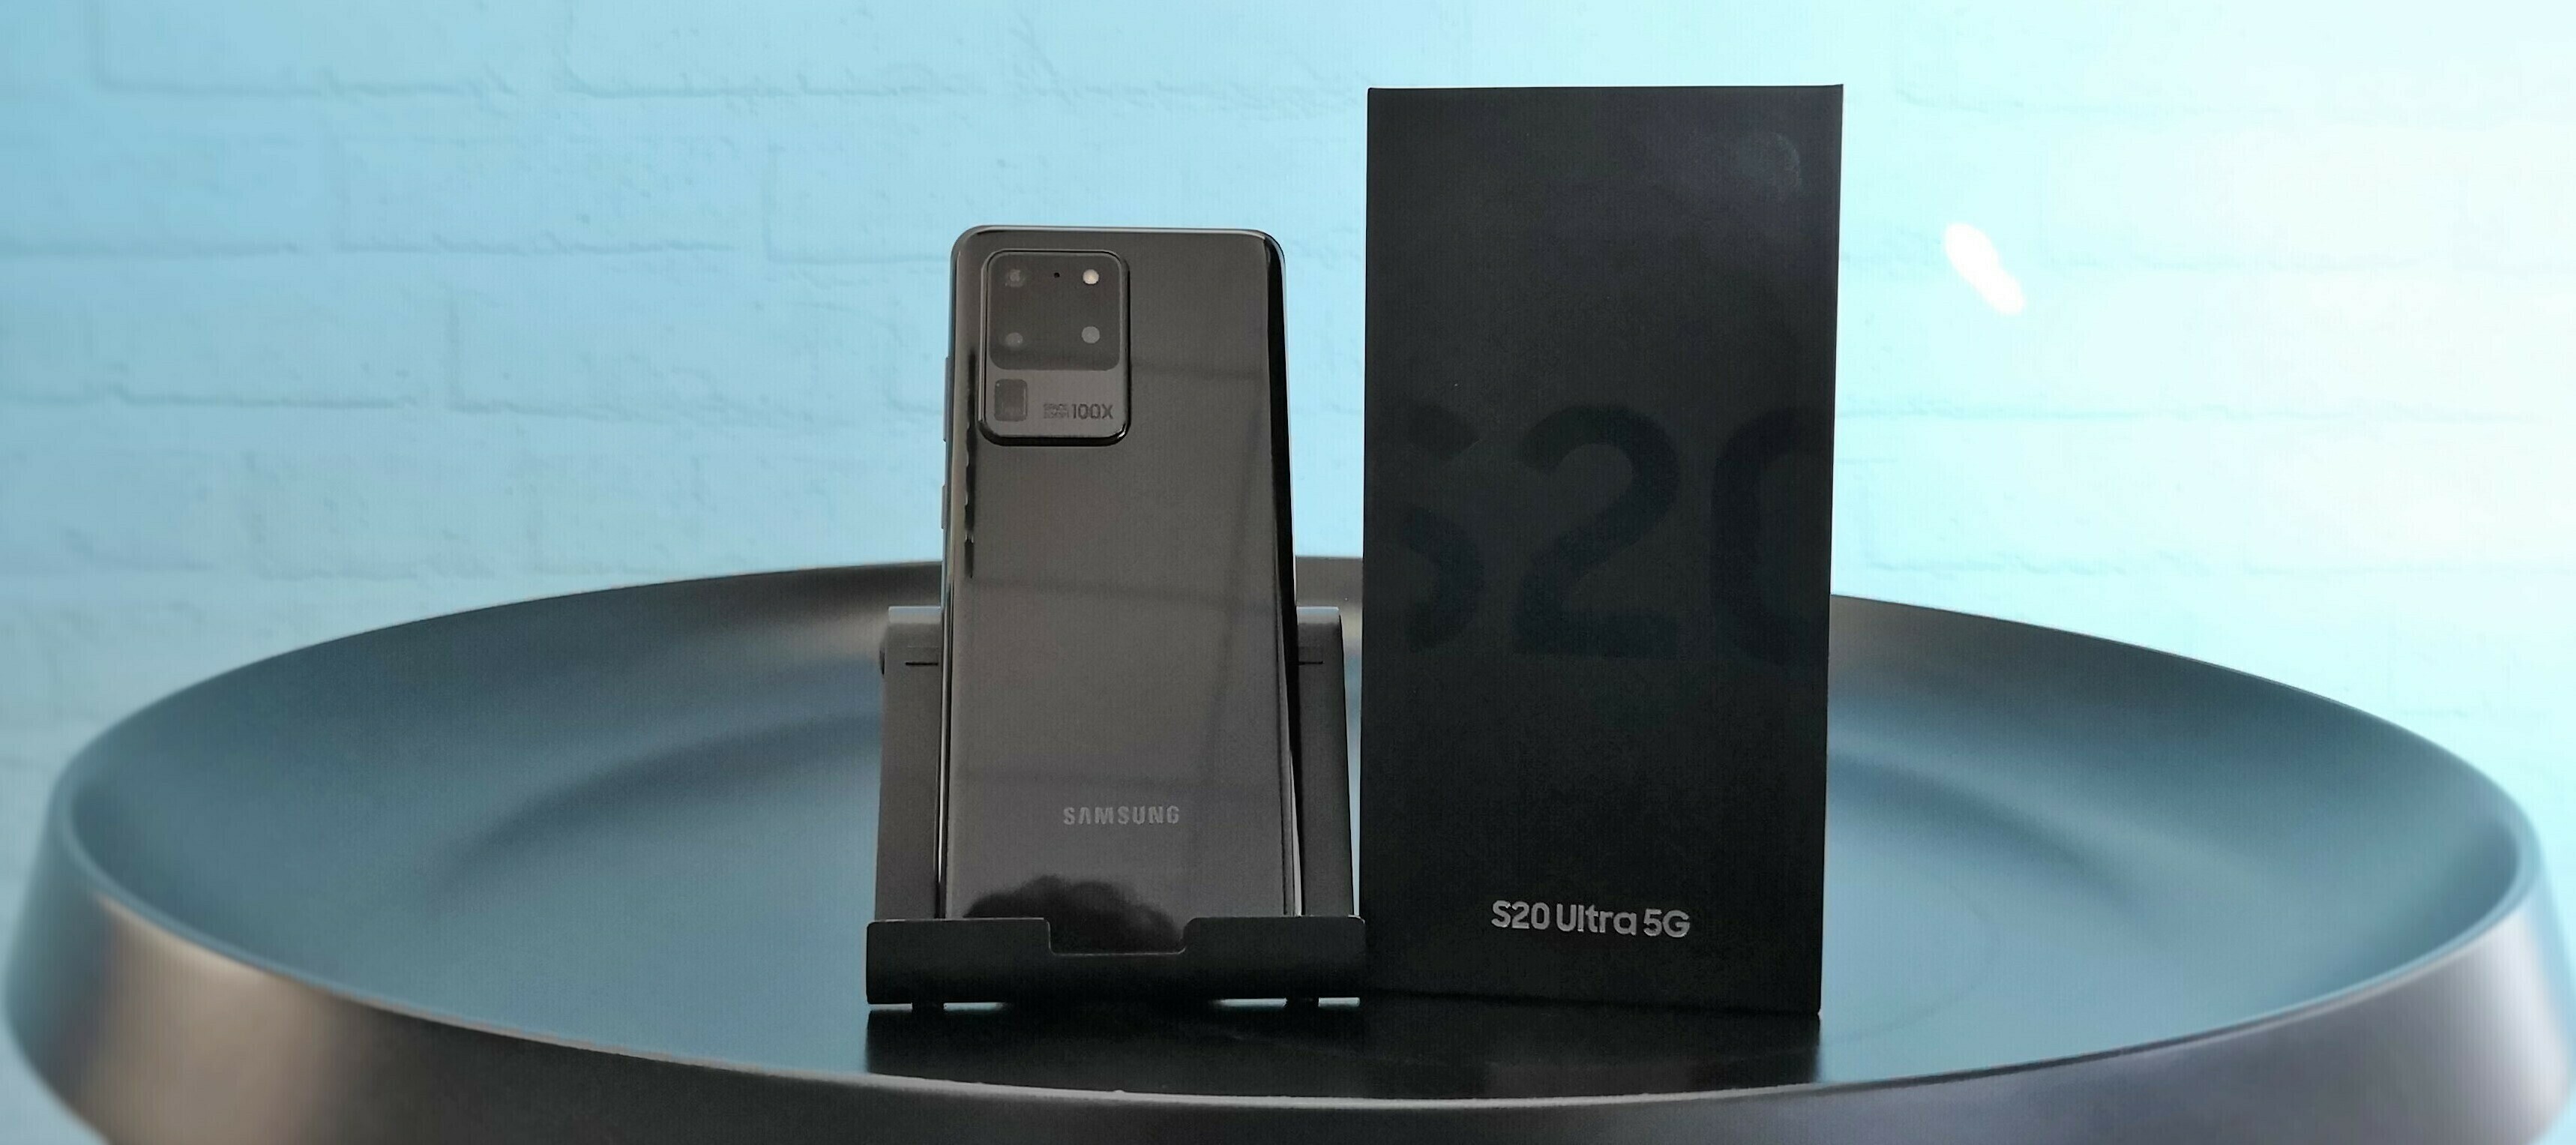 Samsung Galaxy S20 Ultra 5G Testgerät - bringe deinen Test ans Limit - jetzt bewerben!